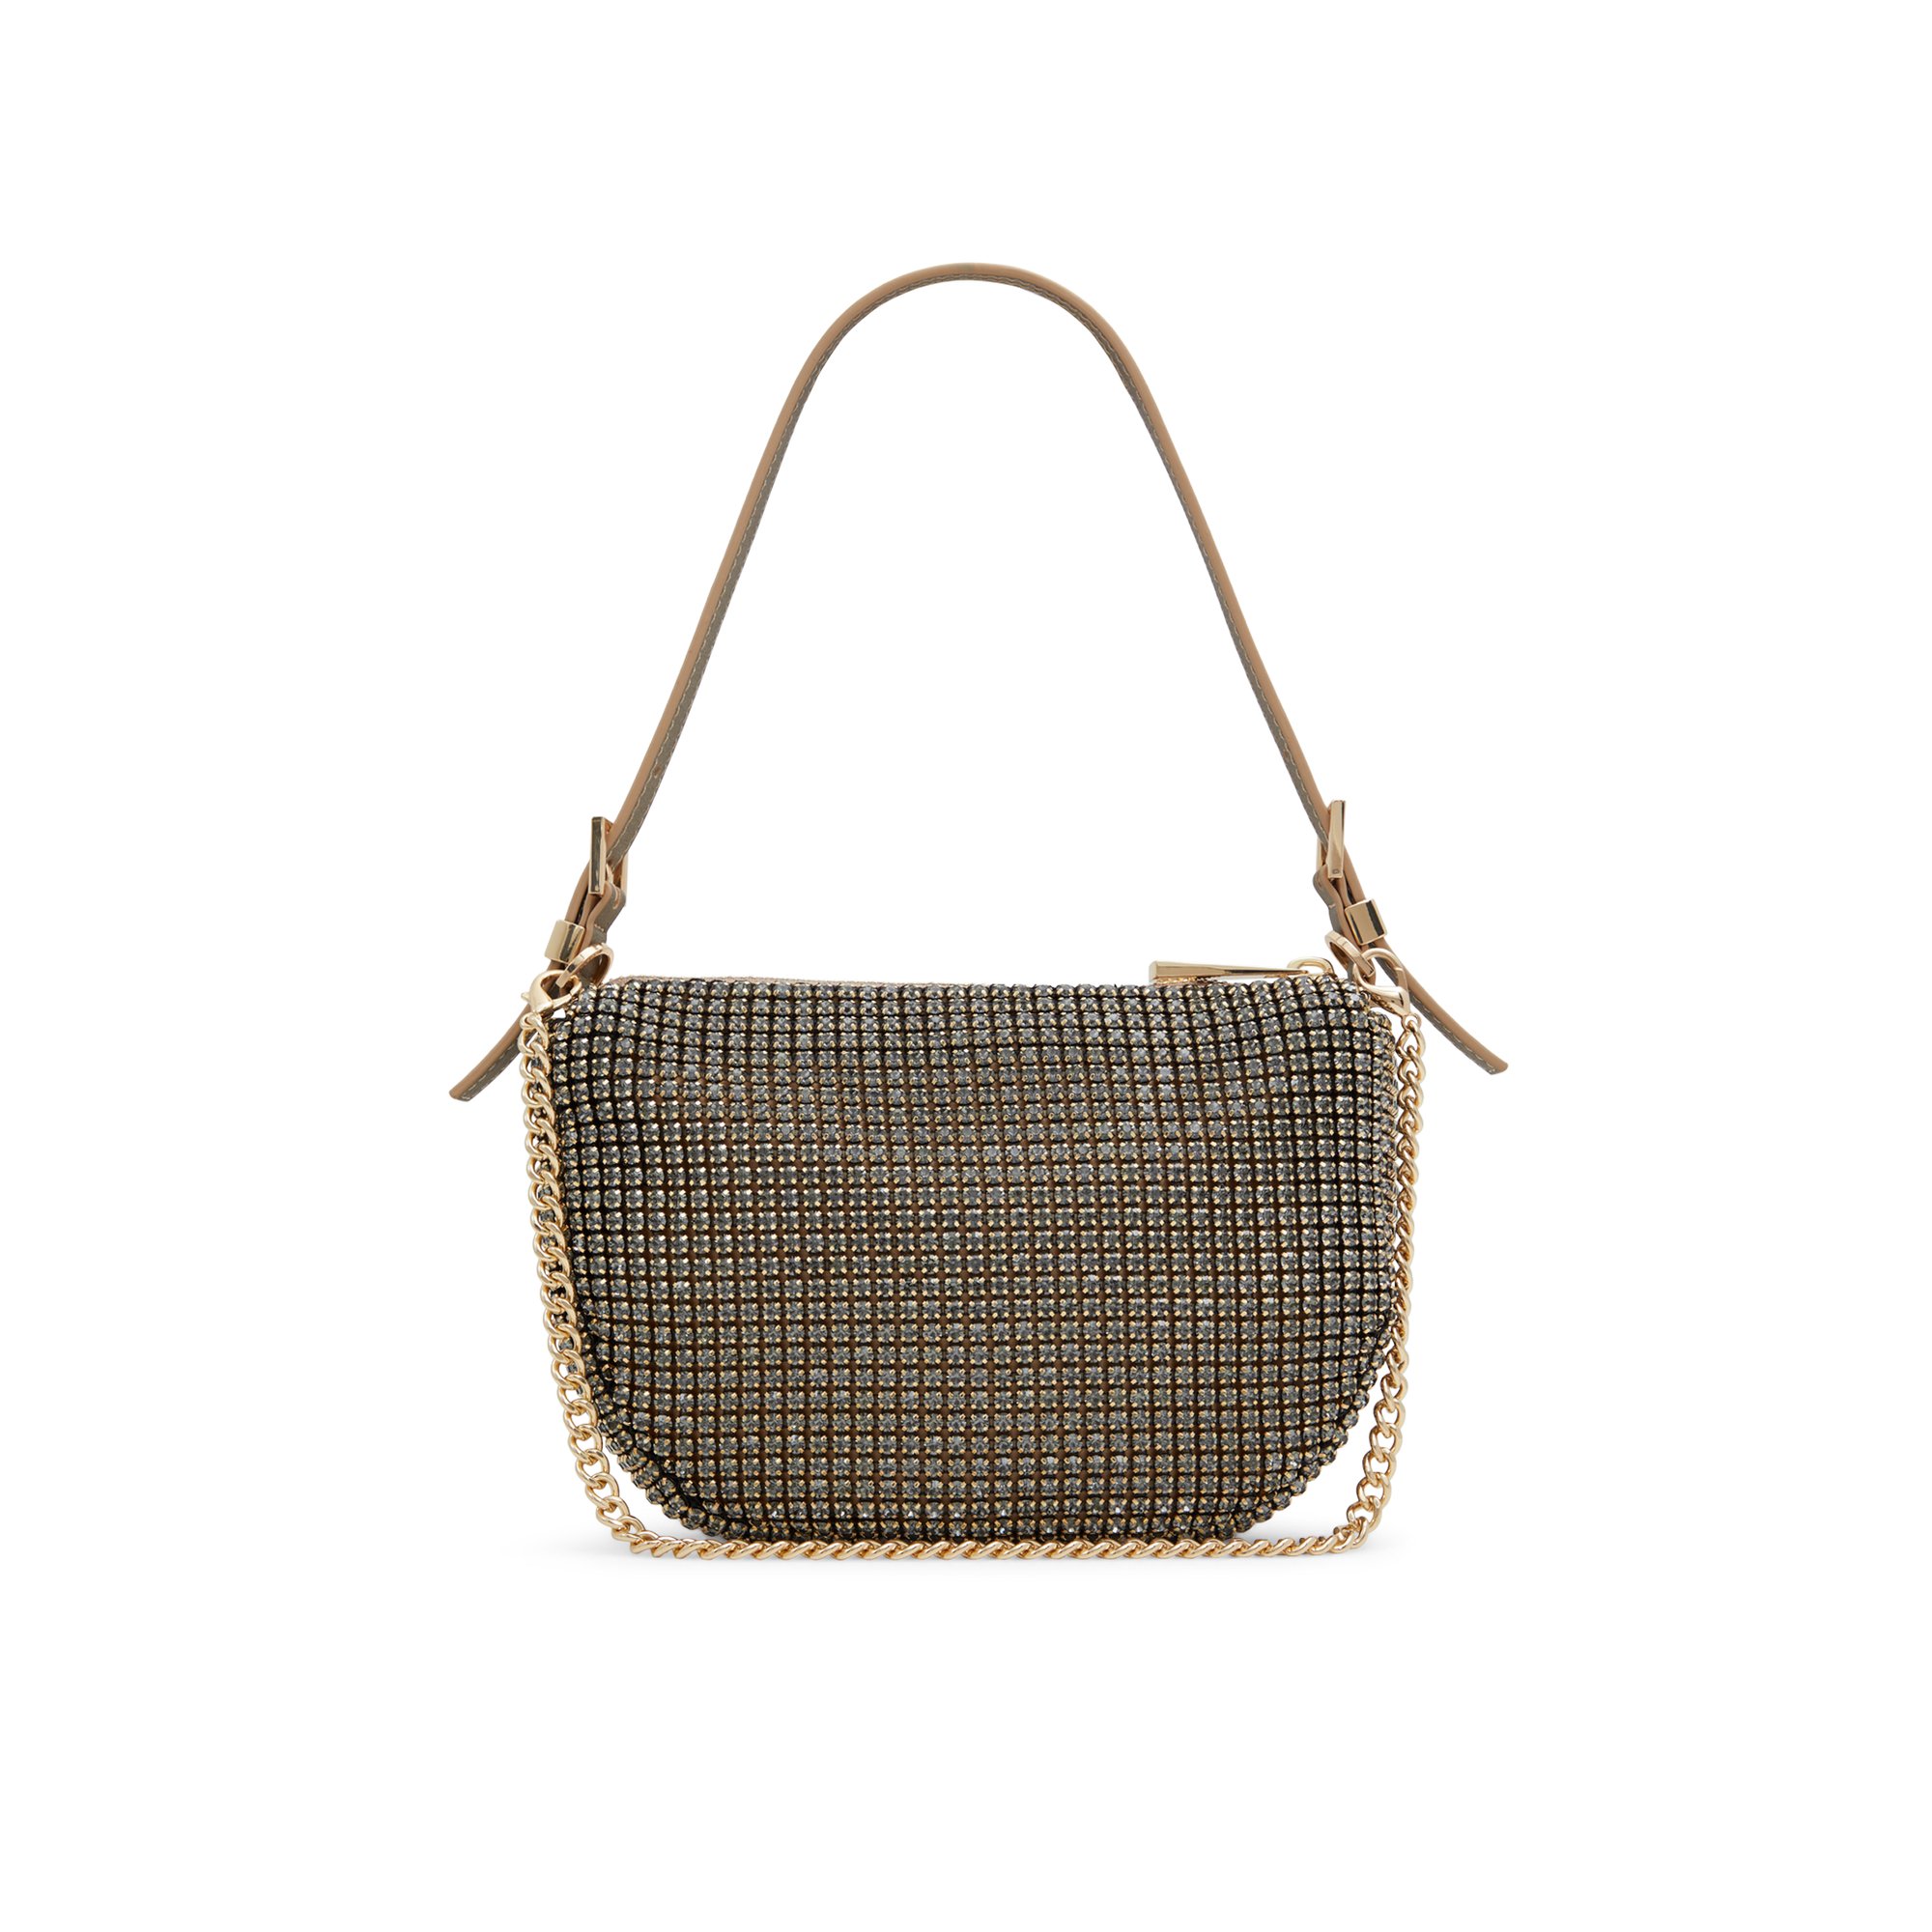 ALDO Mistylax - Women's Handbags Shoulder Bags - Brown